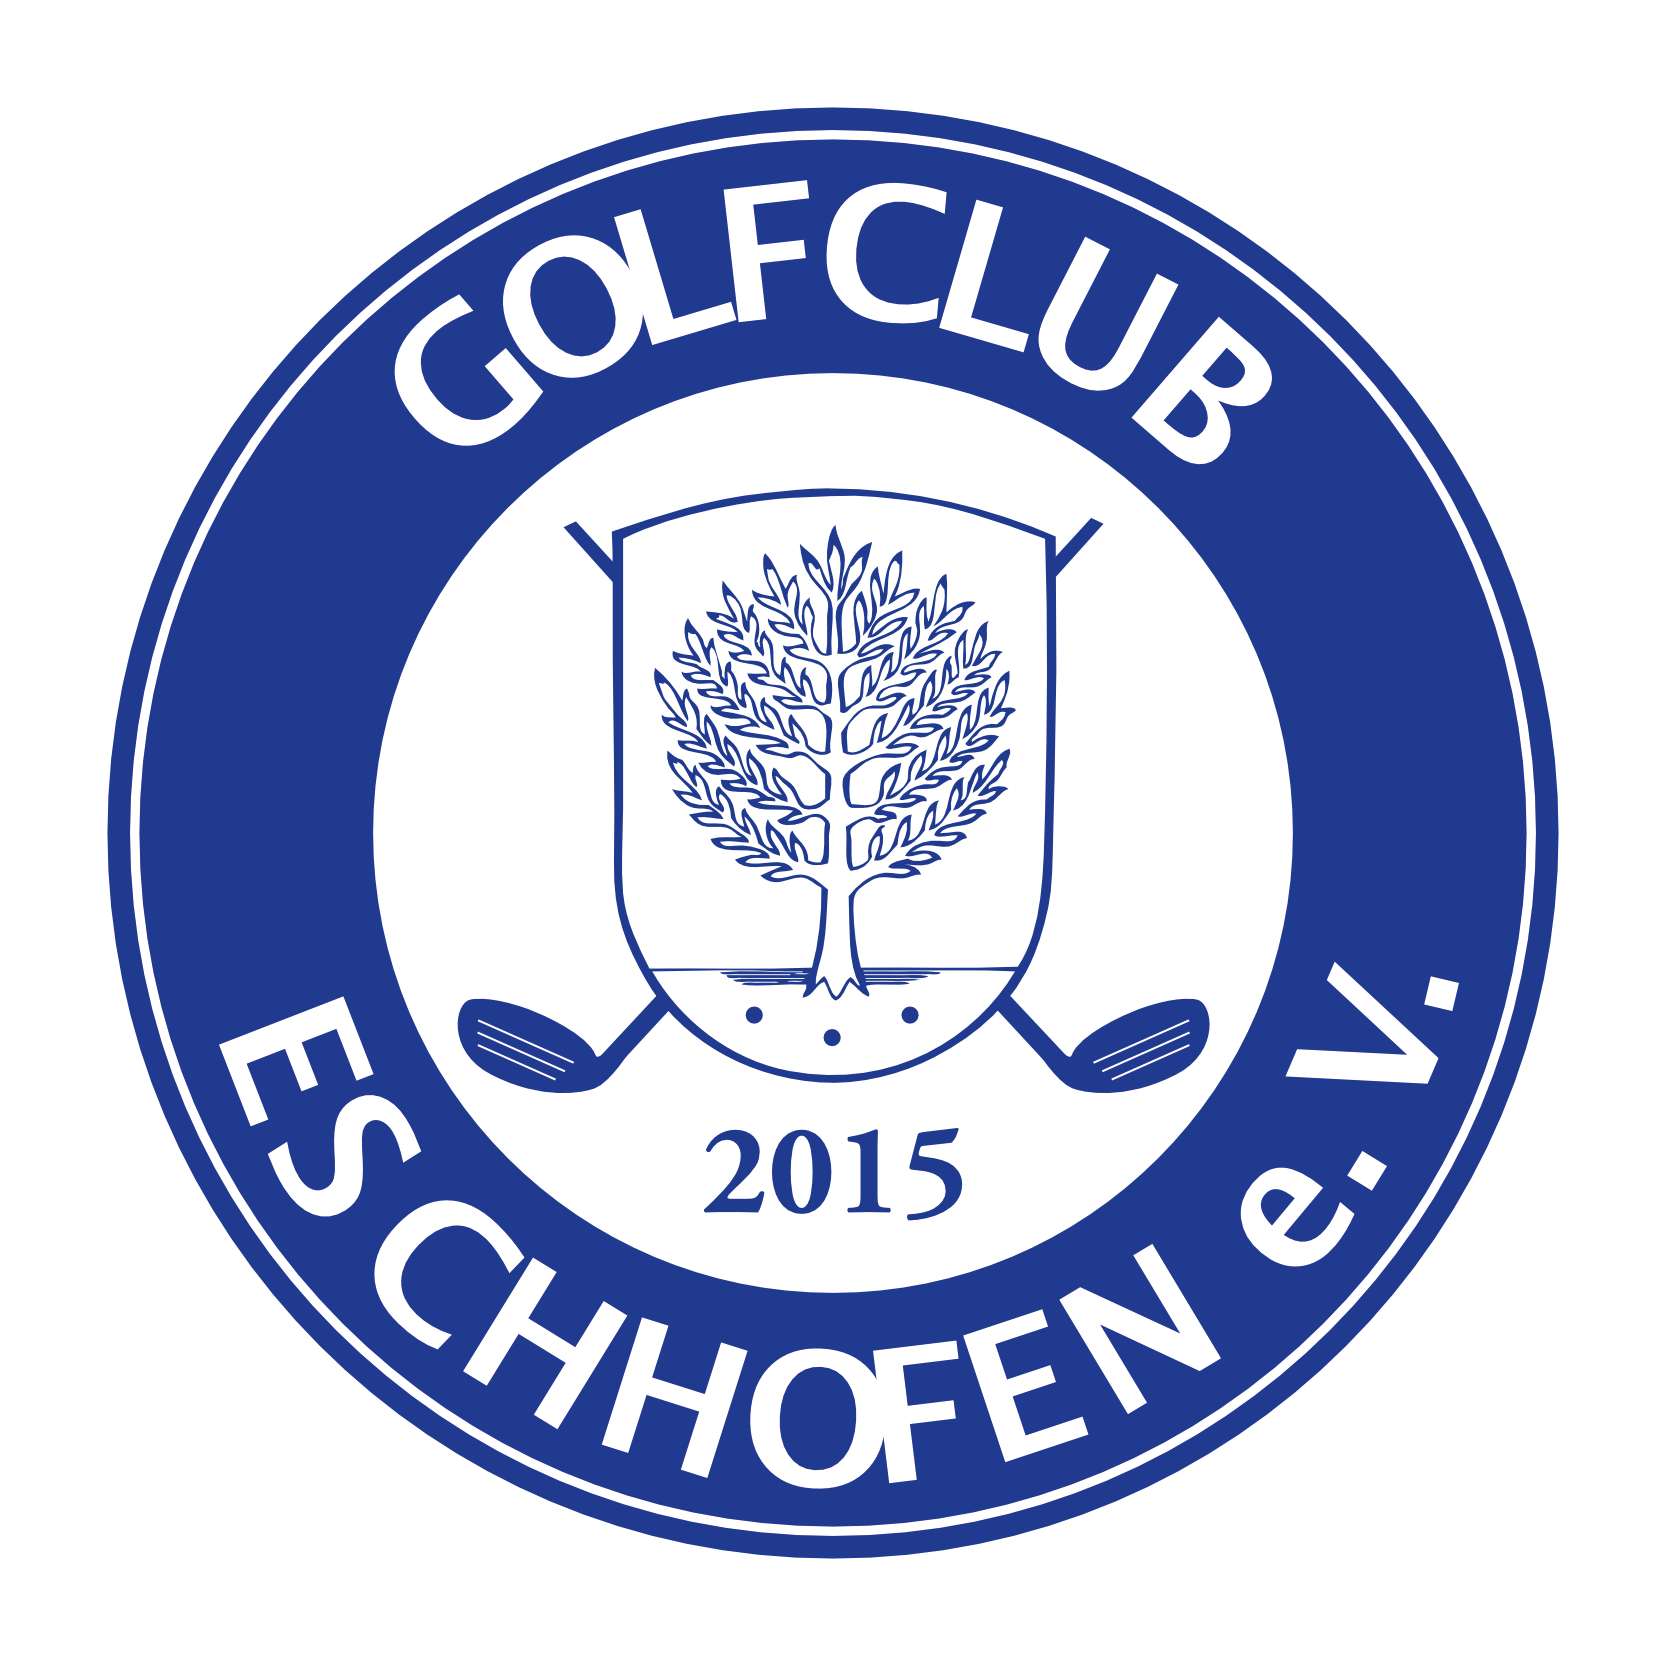 Golfclub Eschhofen